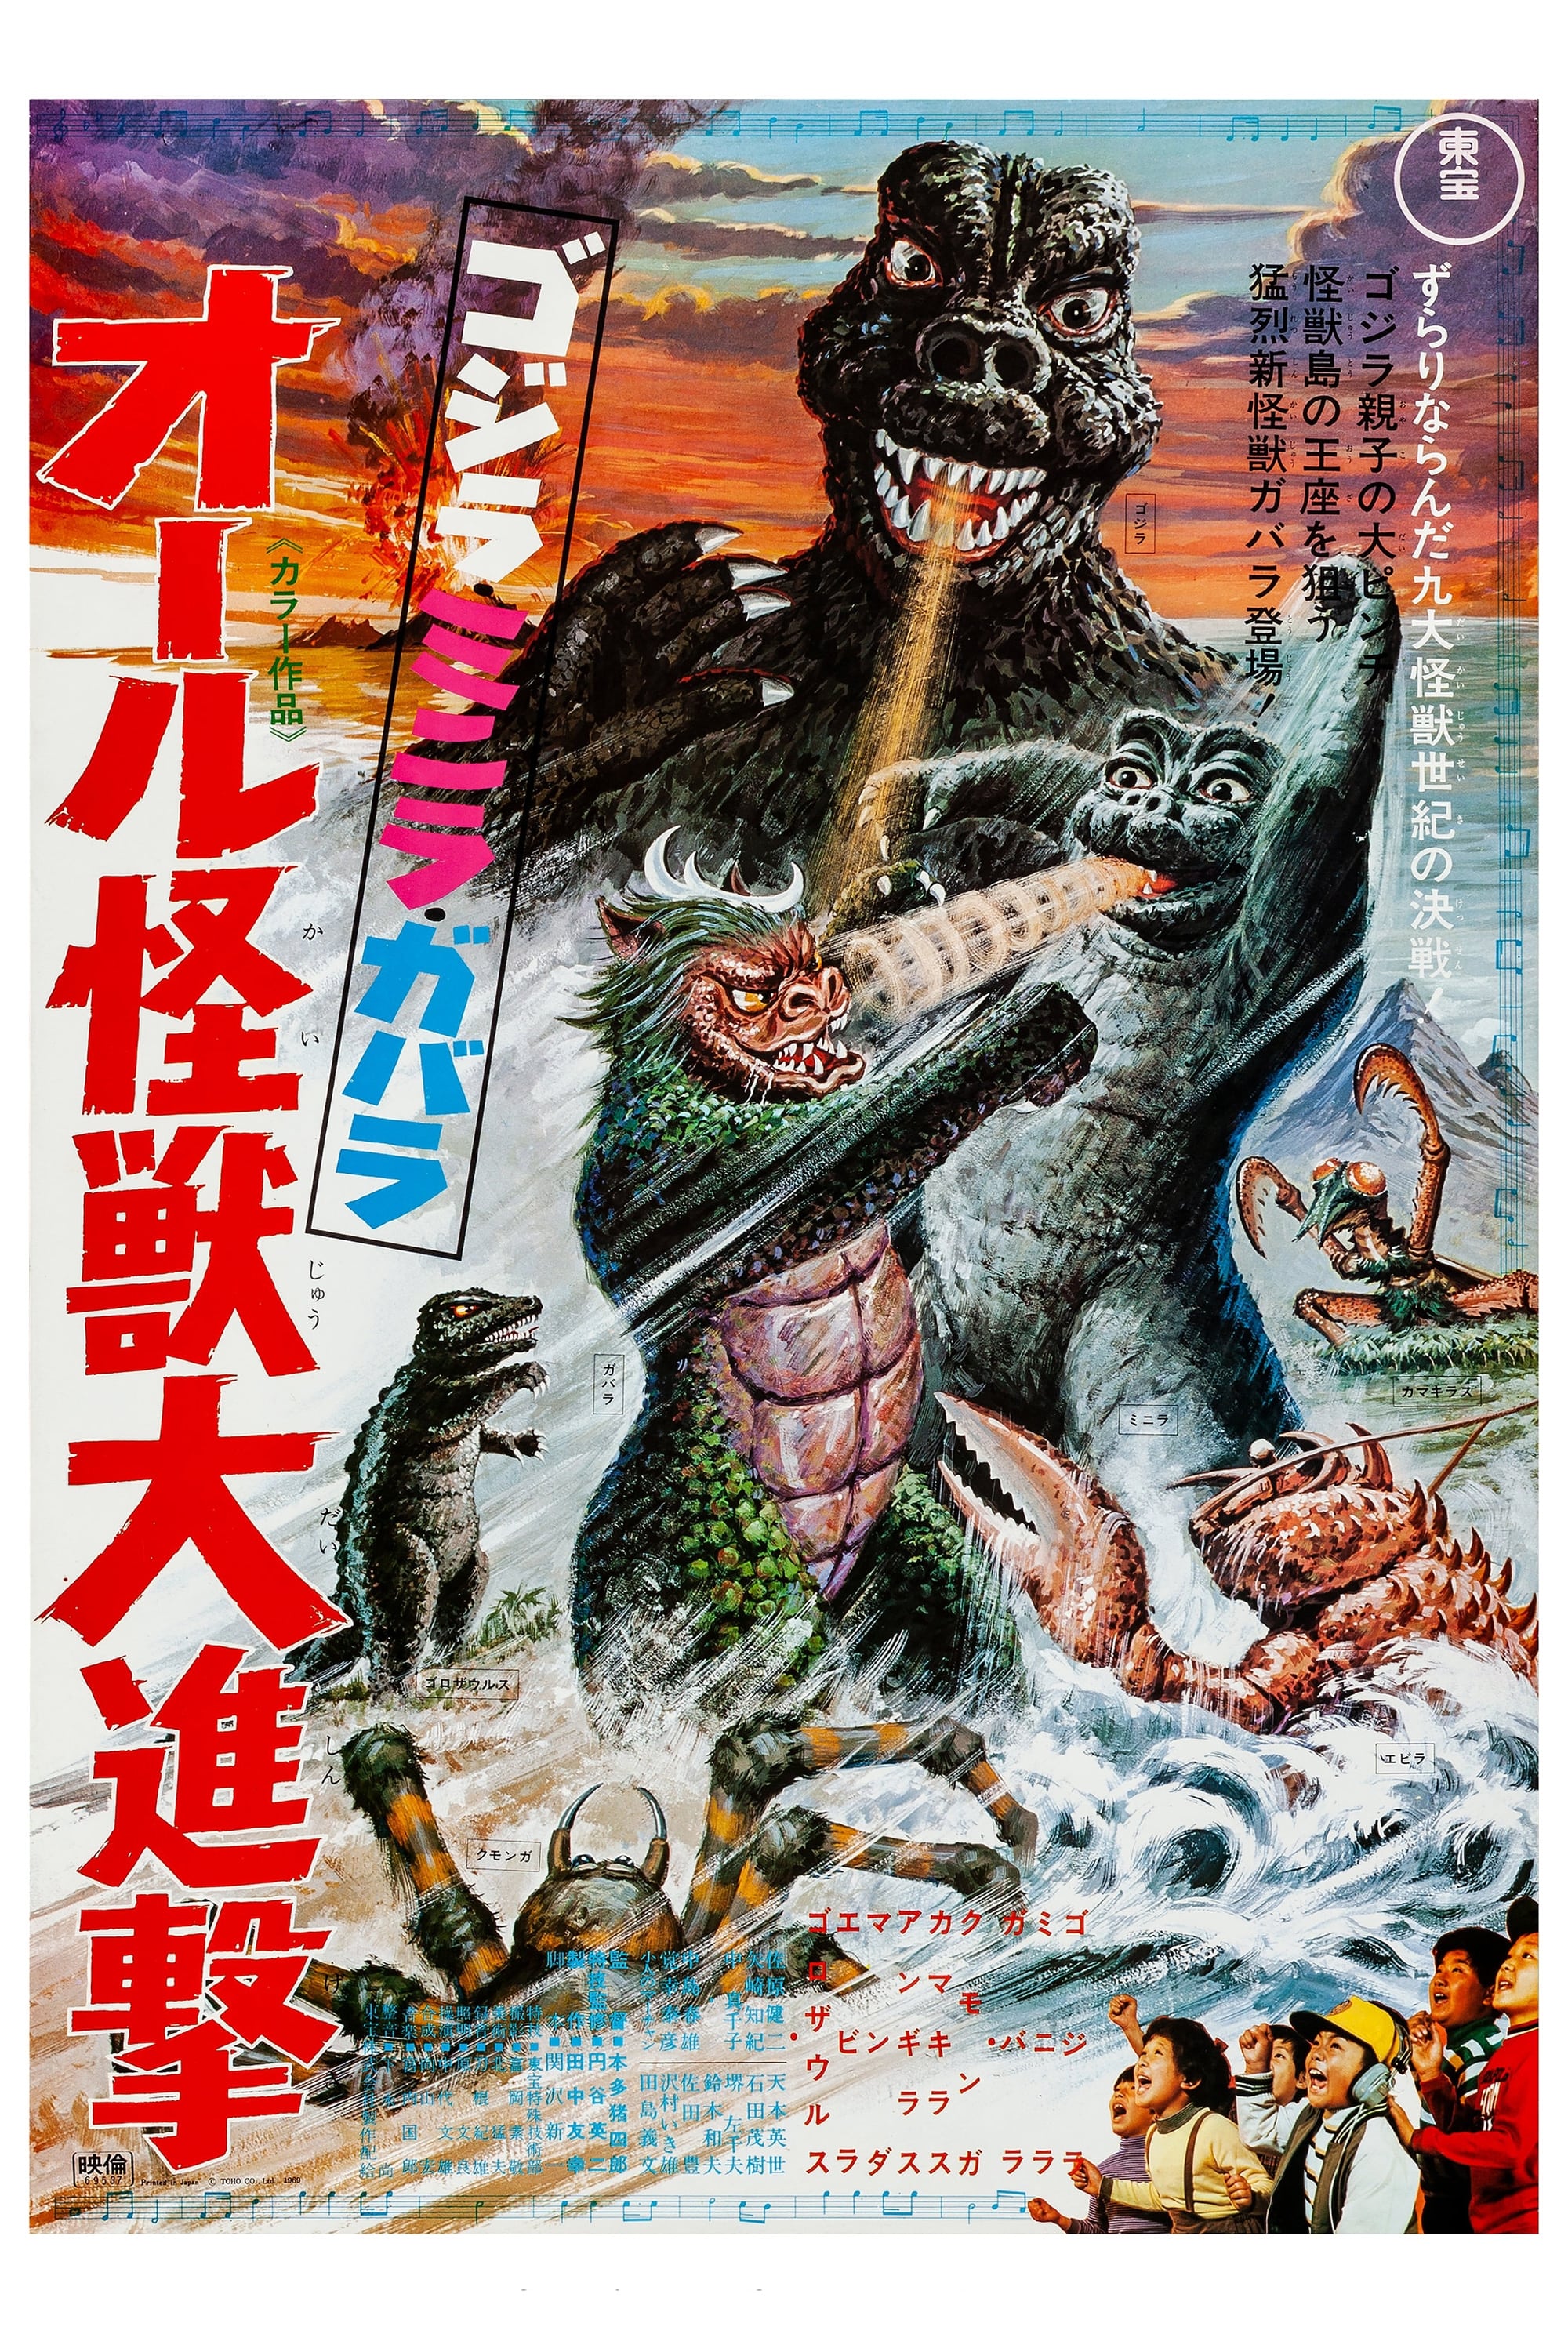 ゴジラ・ミニラ・ガバラ オール怪獣大進撃 (1969) - ポスター画像 